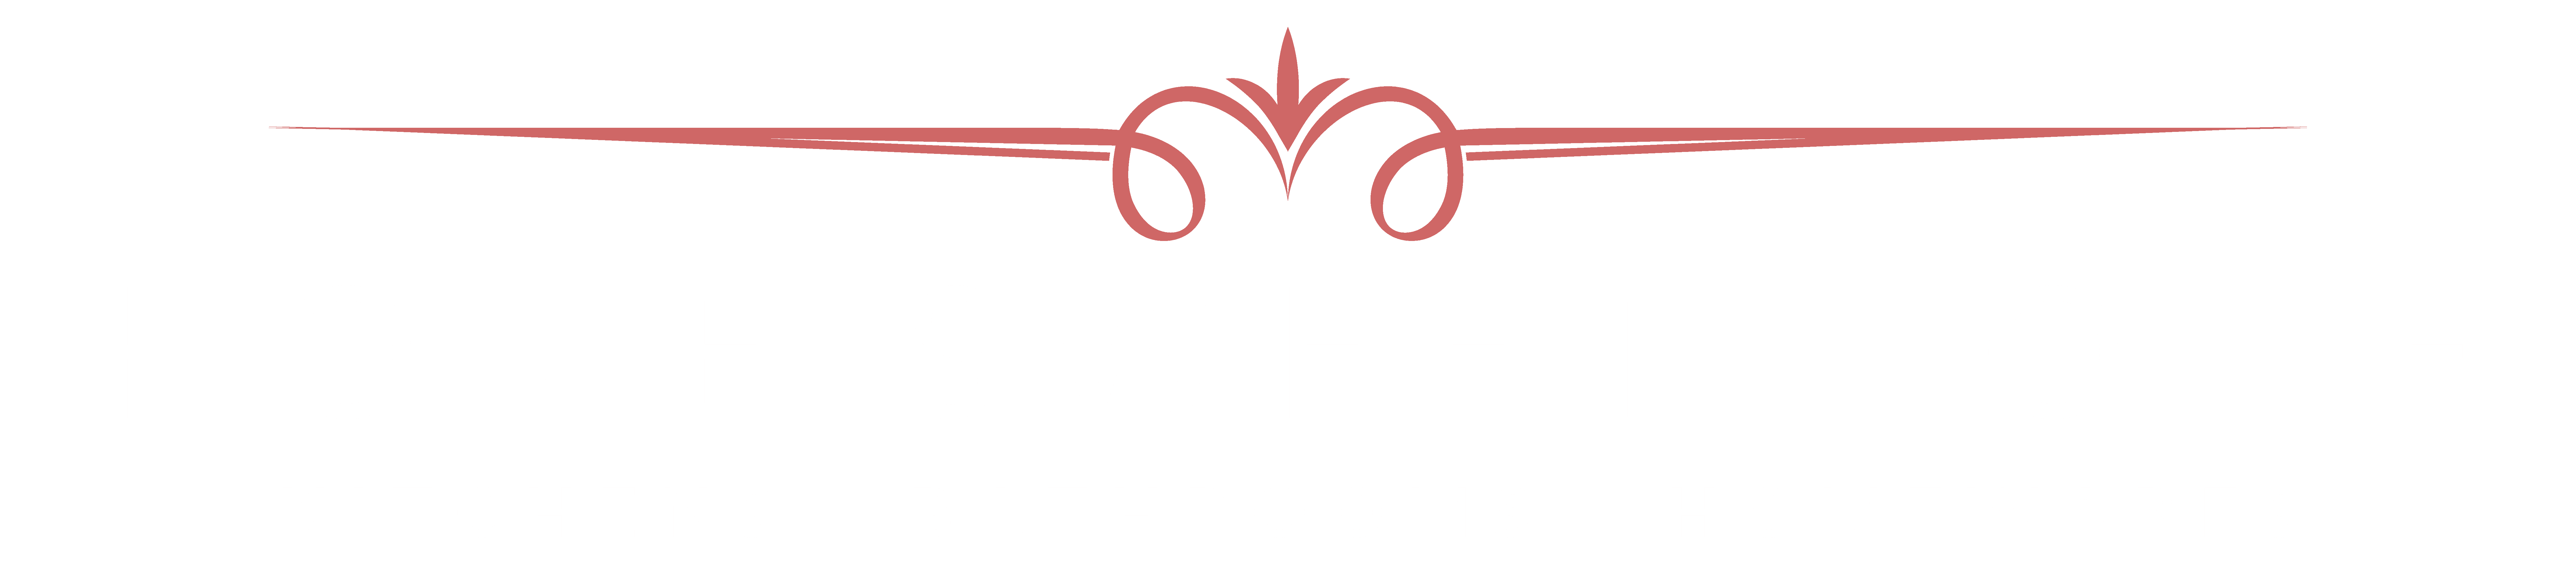 Home Sweet Home kitchen bathroom homeware barnstaple devon